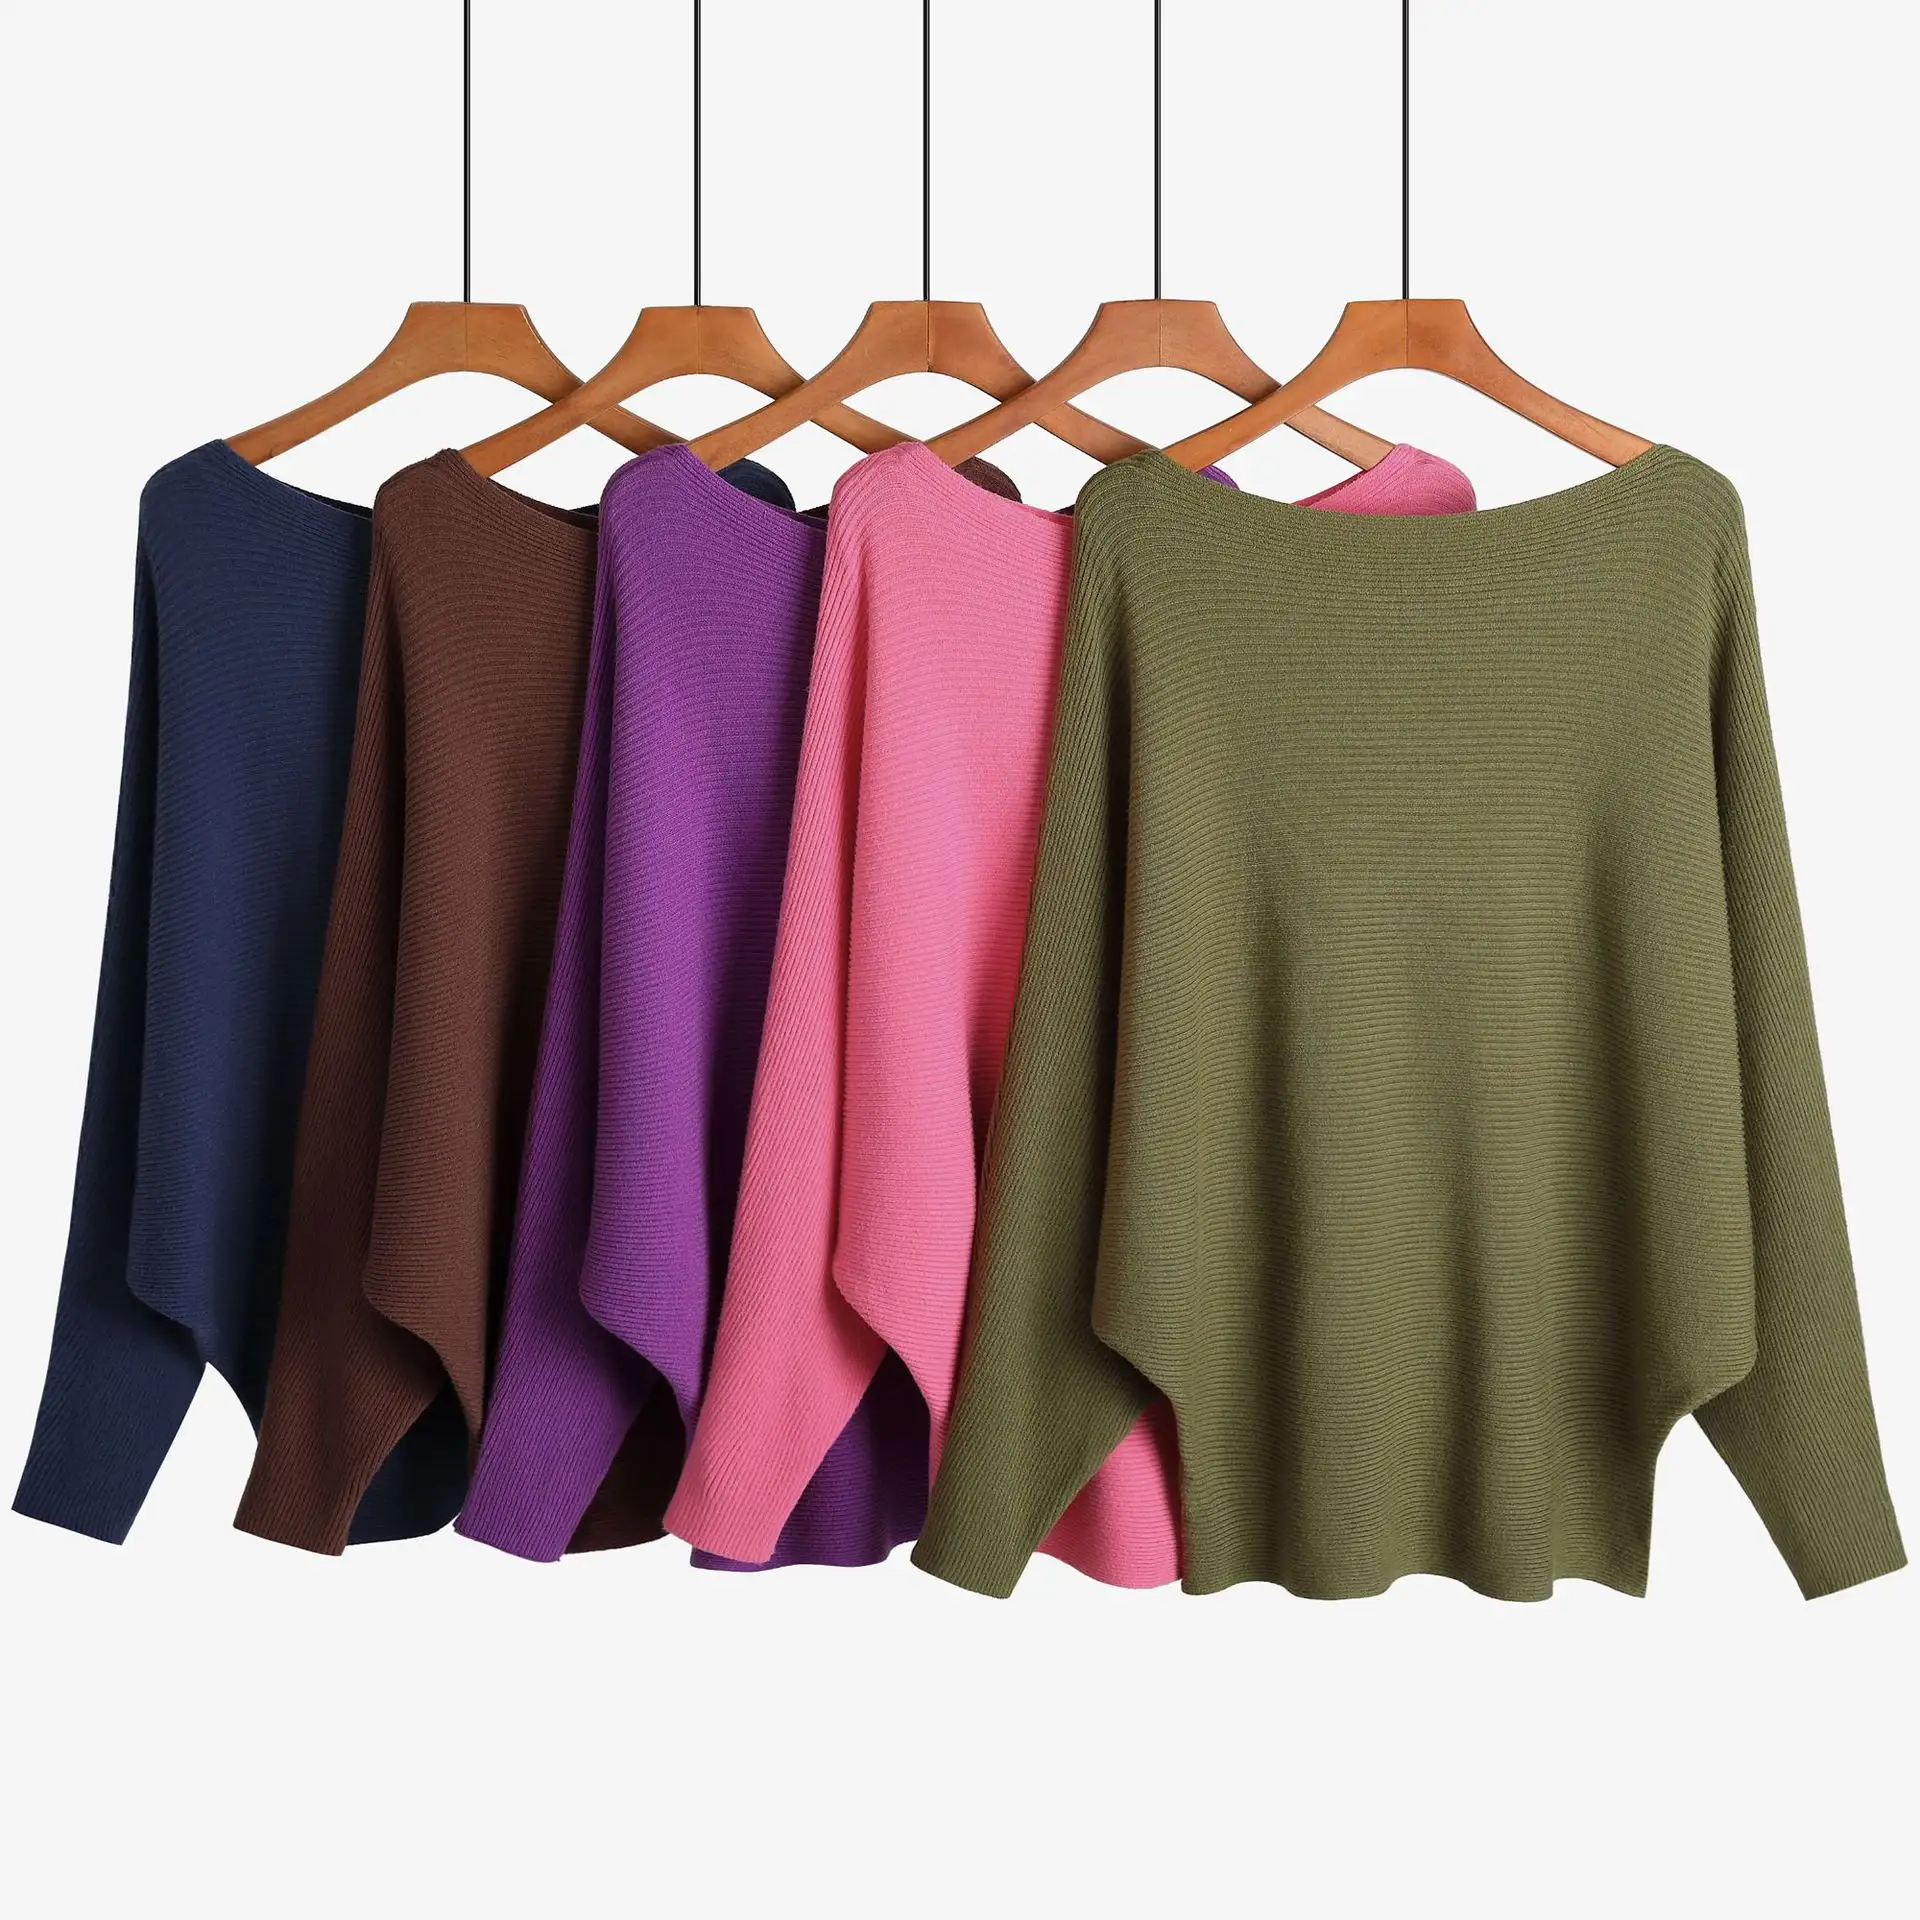 Roupas de malha mohair perempuan personalizadas para jovens, blusa de lã de barbatana lisa e fofa para uso ao ar livre, roupa feminina de gola redonda